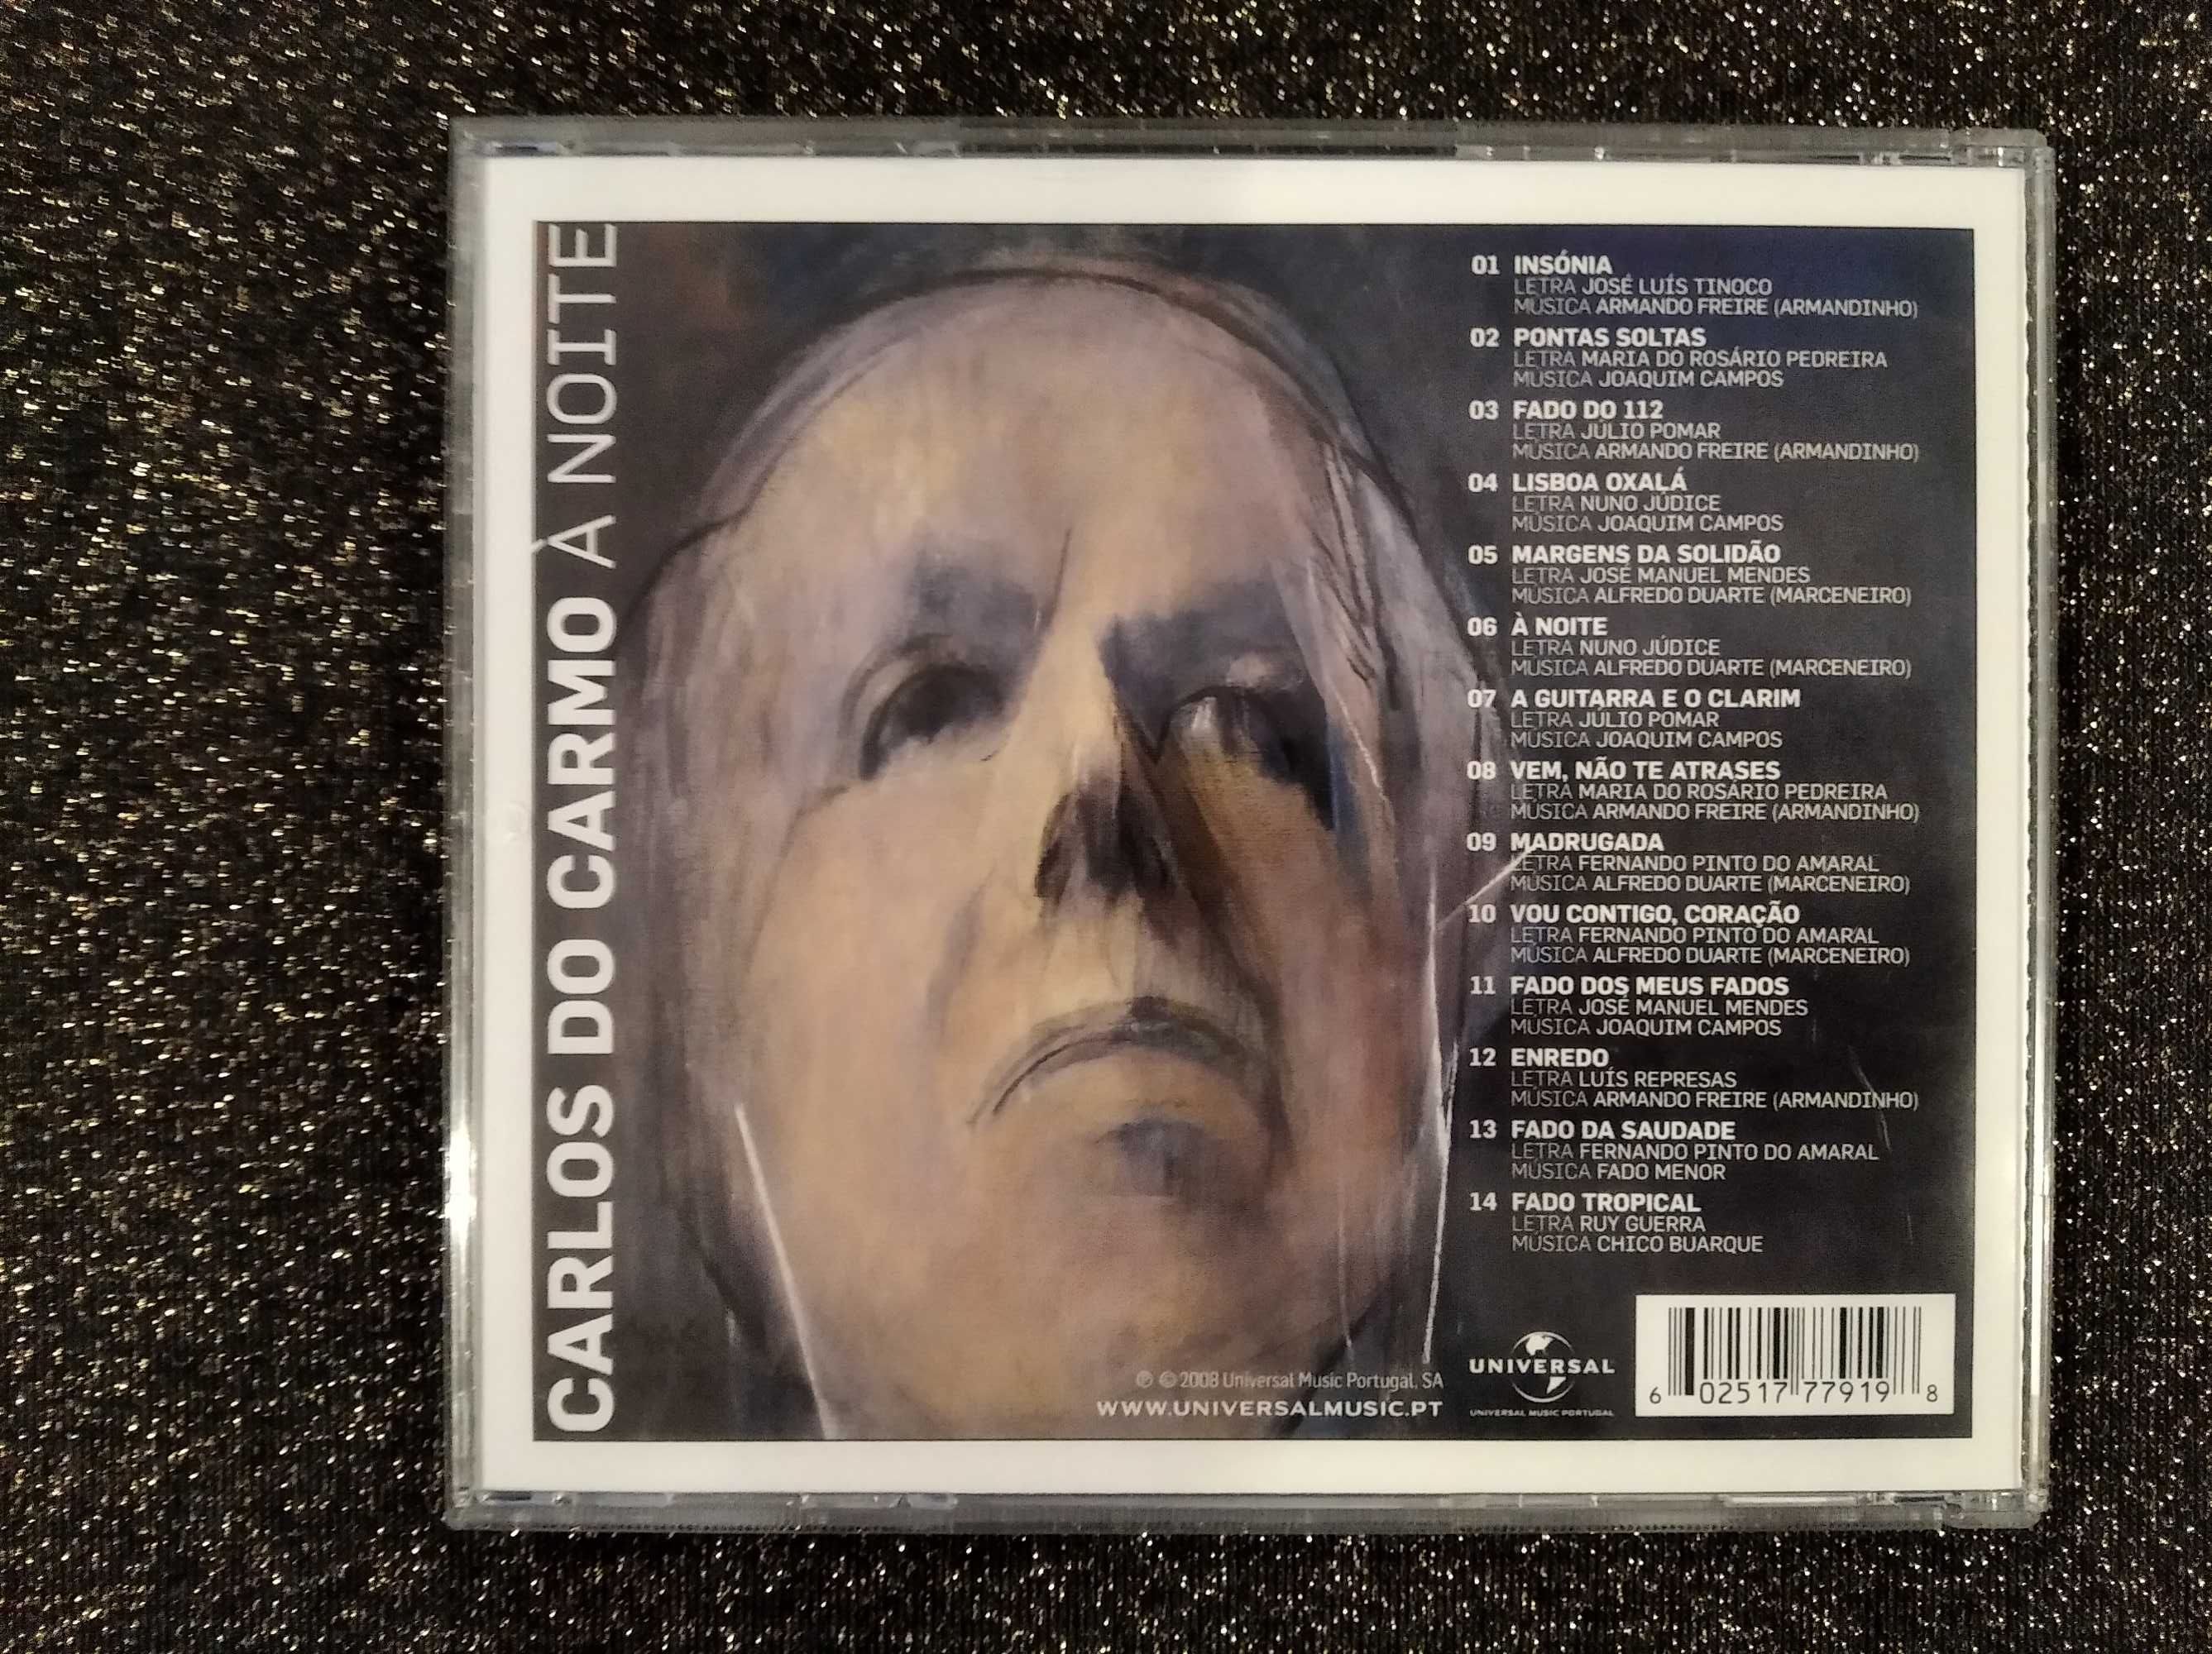 CD's: Mozart, Os Três Tenores, Carlos do Carmo